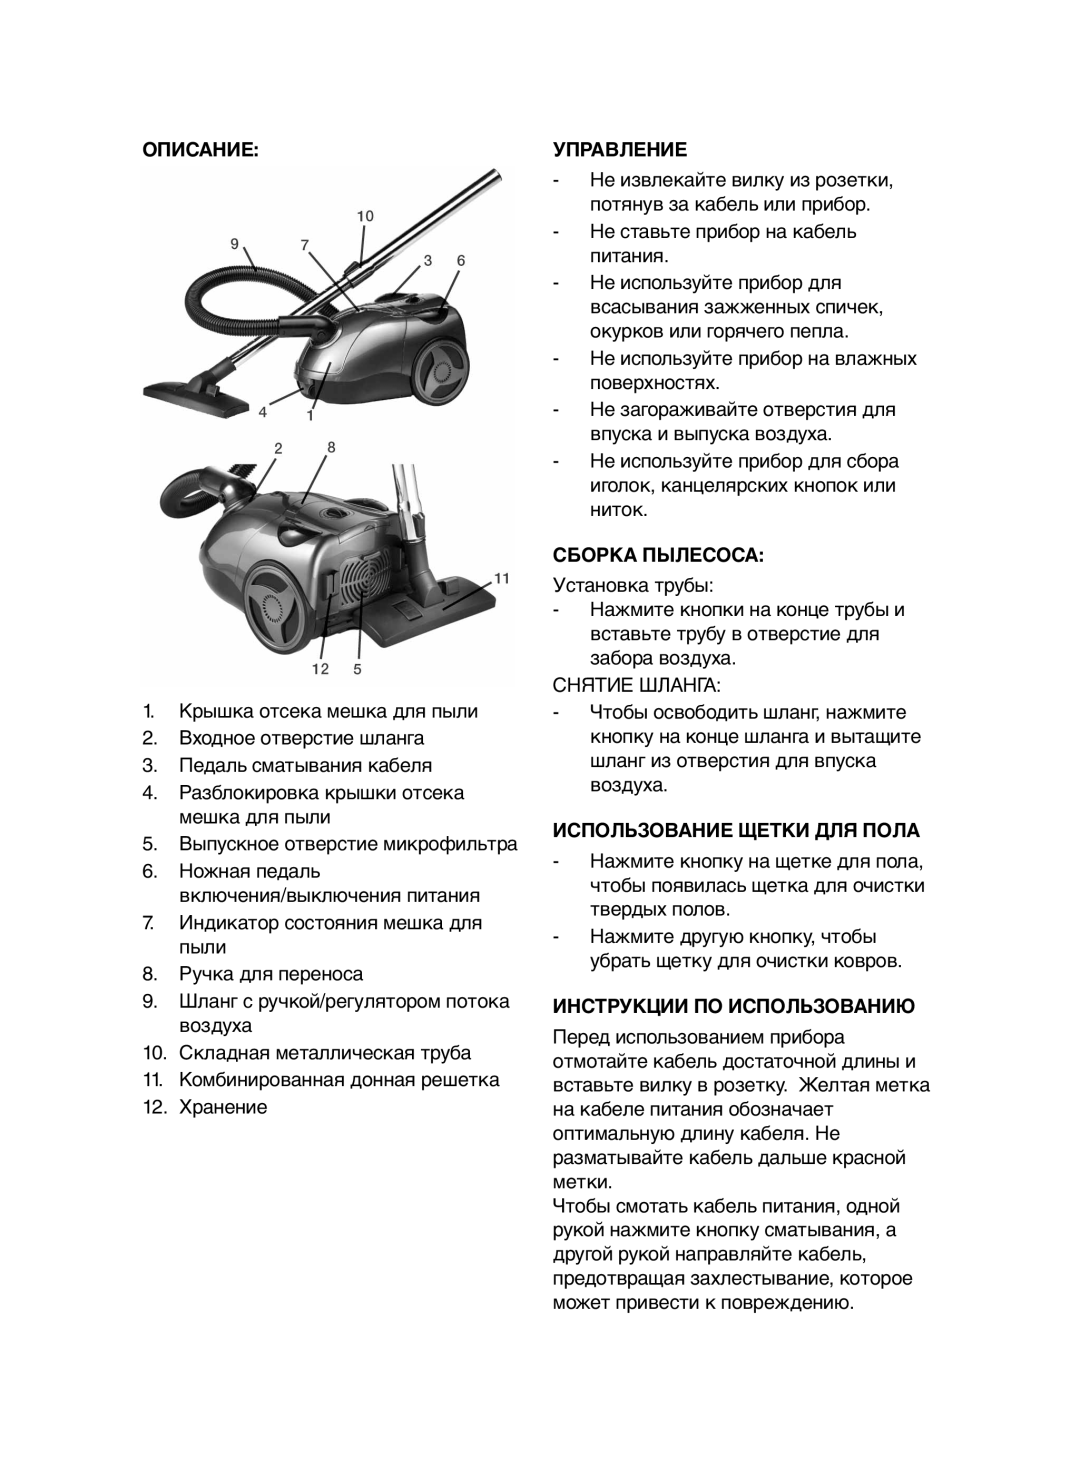 Melissa 640-045 manual Описание, Управление, Сборка Пылесоса, Использование Щетки Для Пола, Инструкции По Использованию 